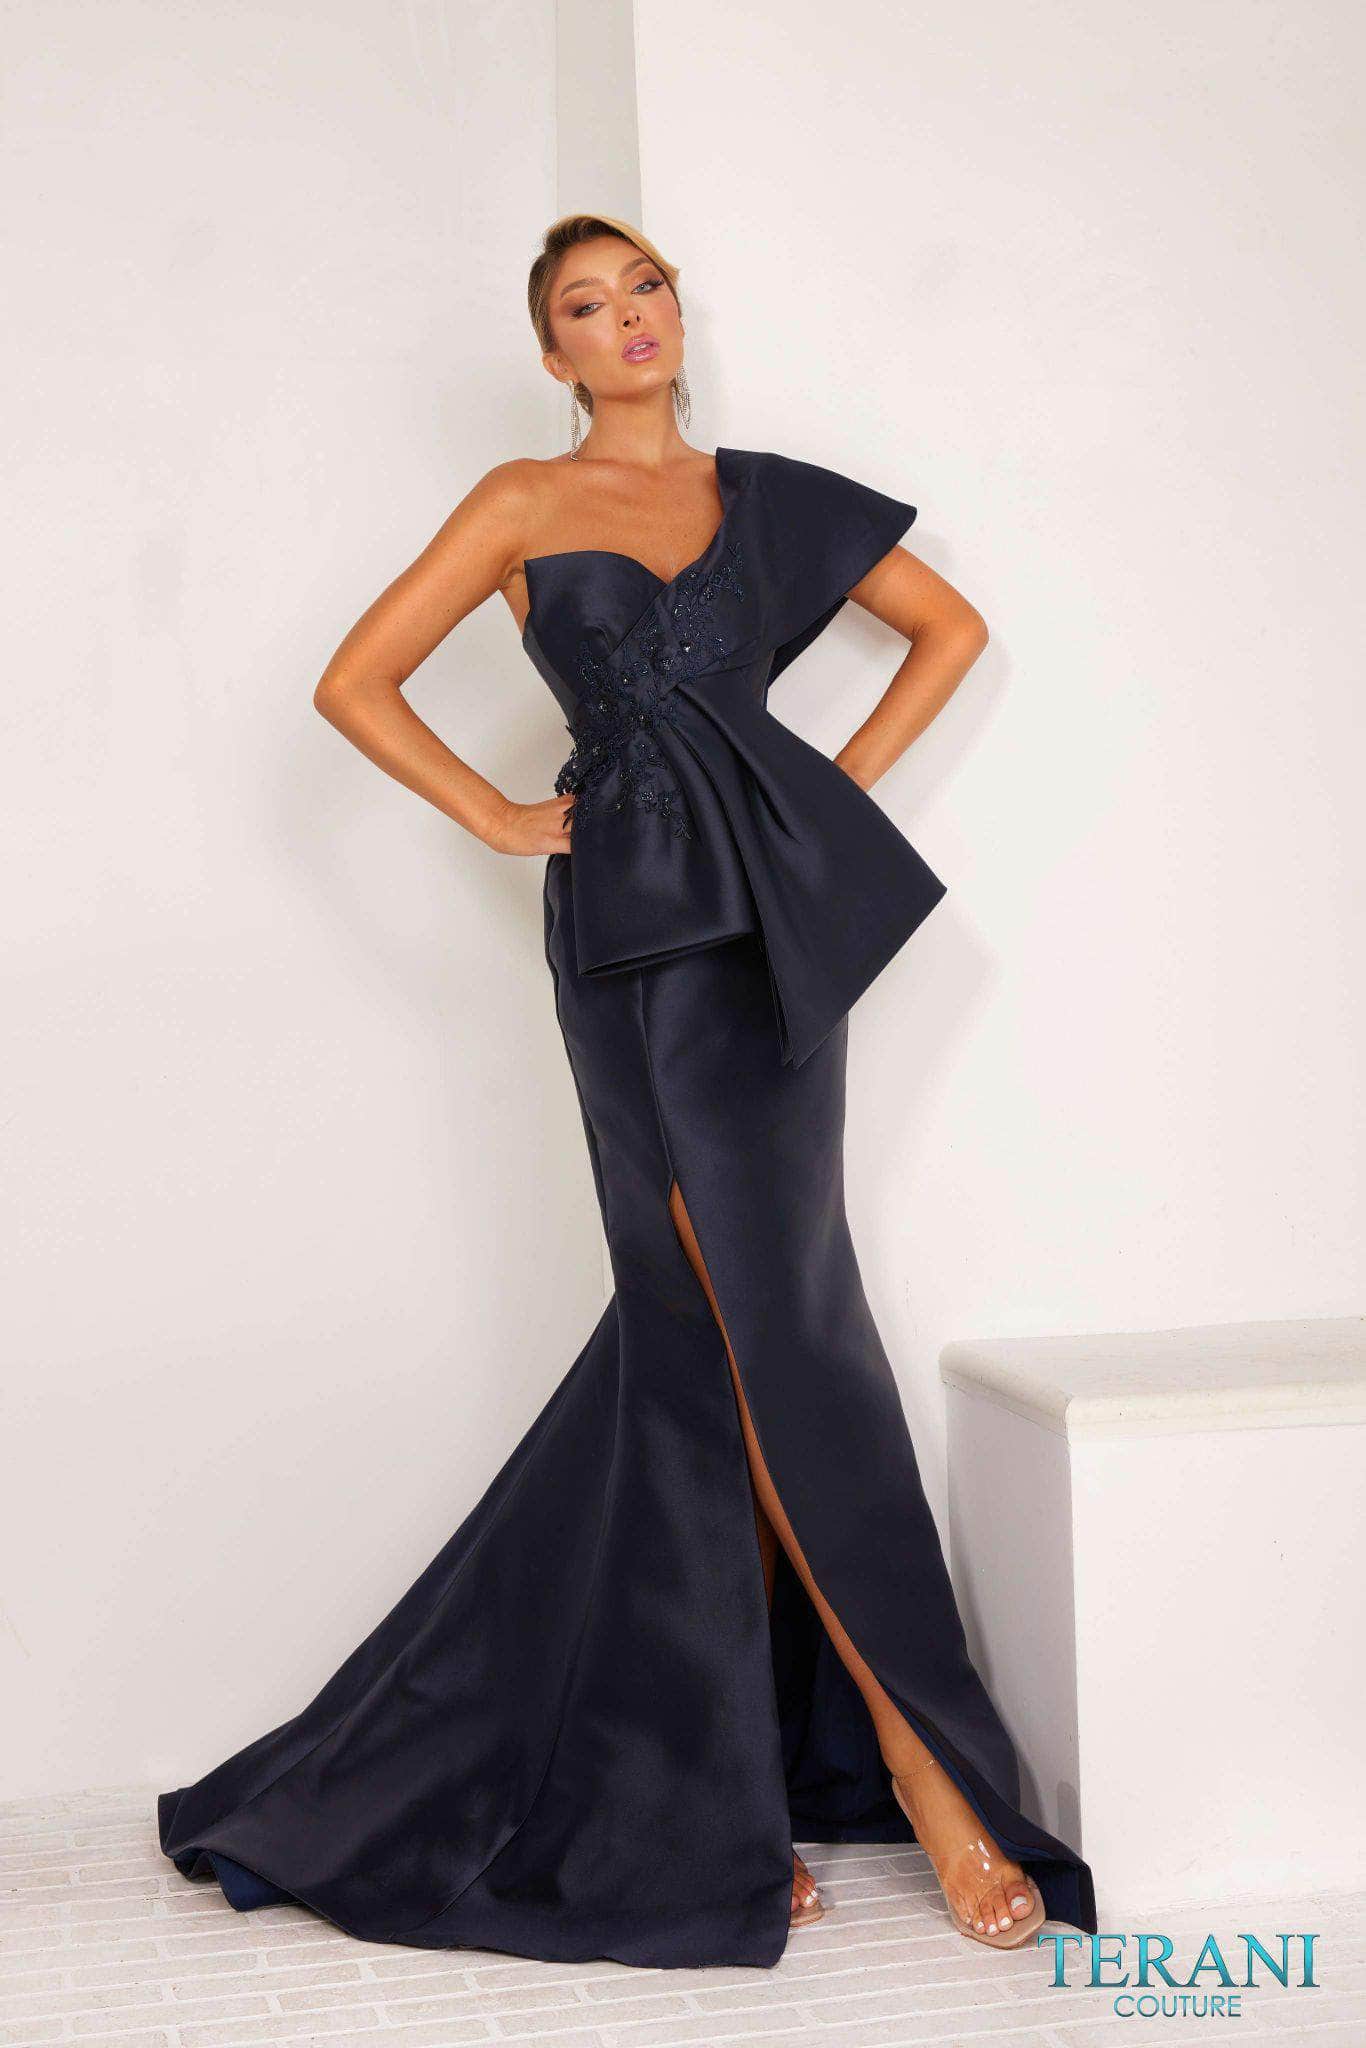 Terani Couture 241E2468 - Applique Draped Evening Dress Special Occasion Dress